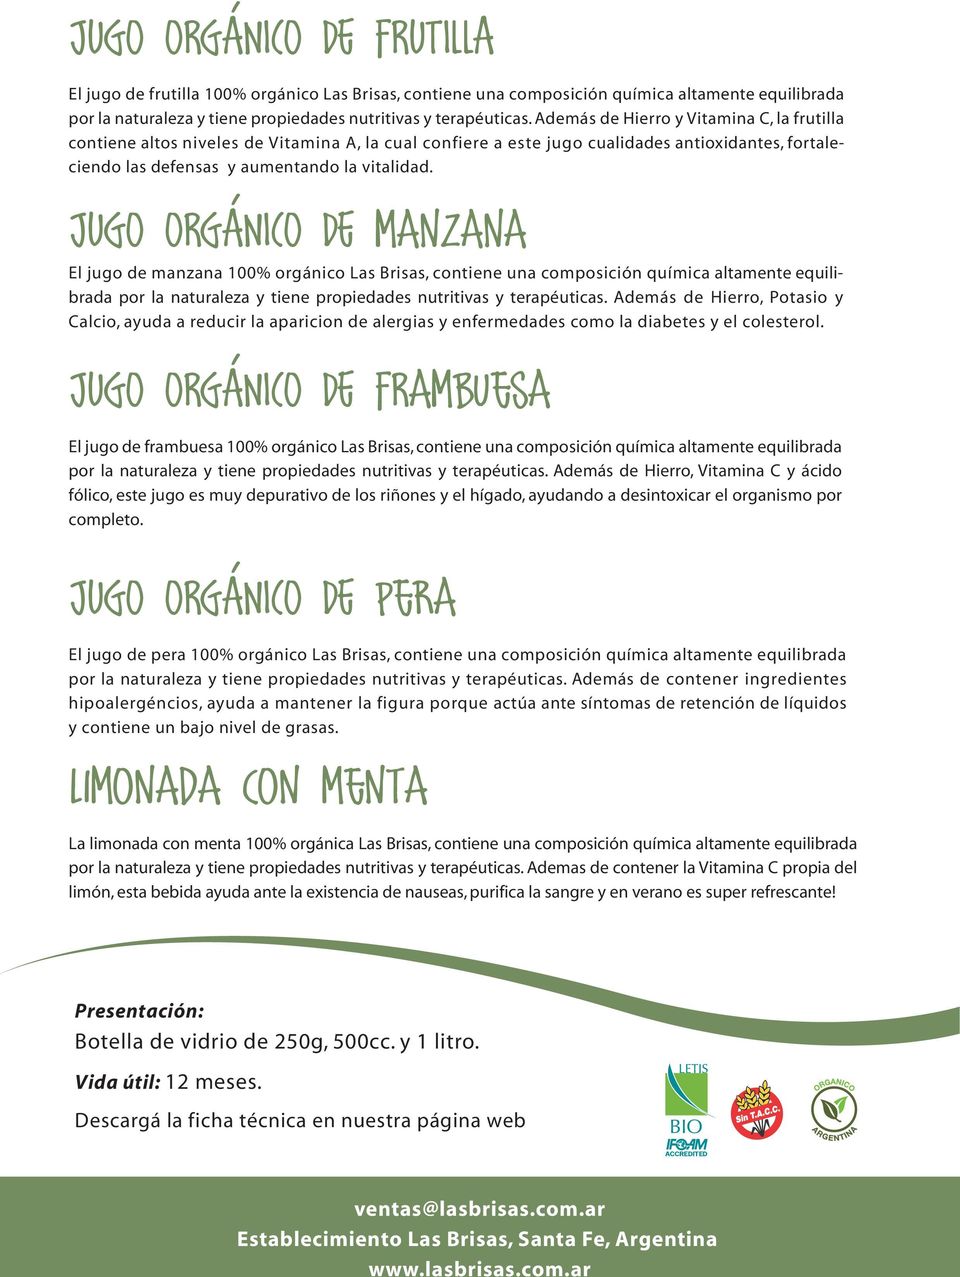 JUGO ORGÁNICO DE manzana El jugo de manzana 100% orgánico Las Brisas, contiene una composición química altamente equilibrada por la naturaleza y tiene propiedades nutritivas y terapéuticas.